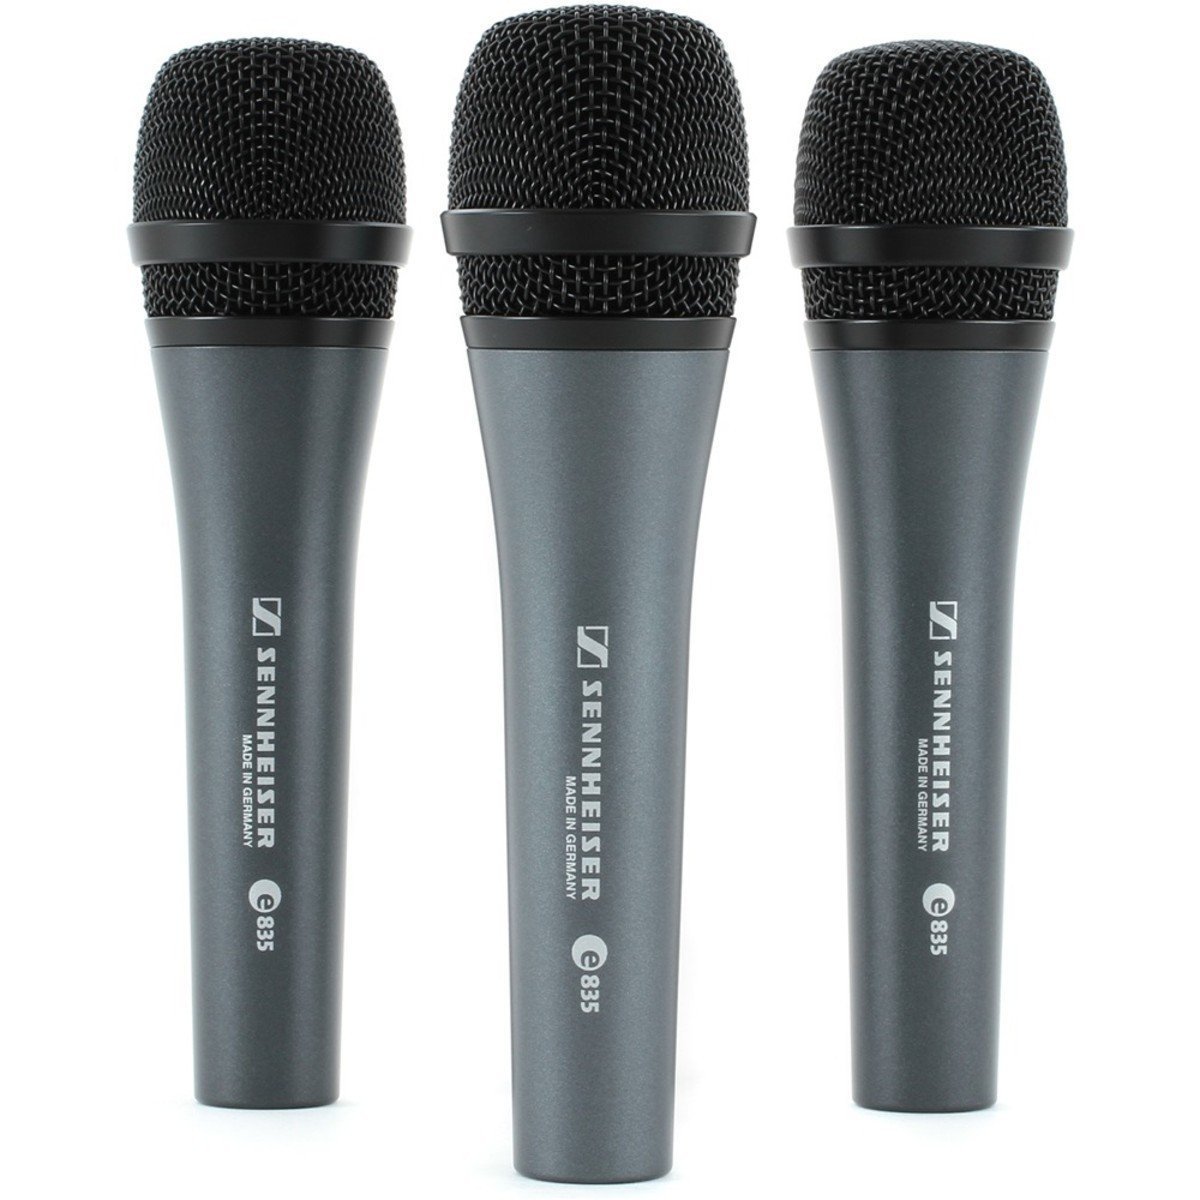 Vocal Dynamic Microphone Sennheiser E835 3Pack Vocal Dynamic Microphone